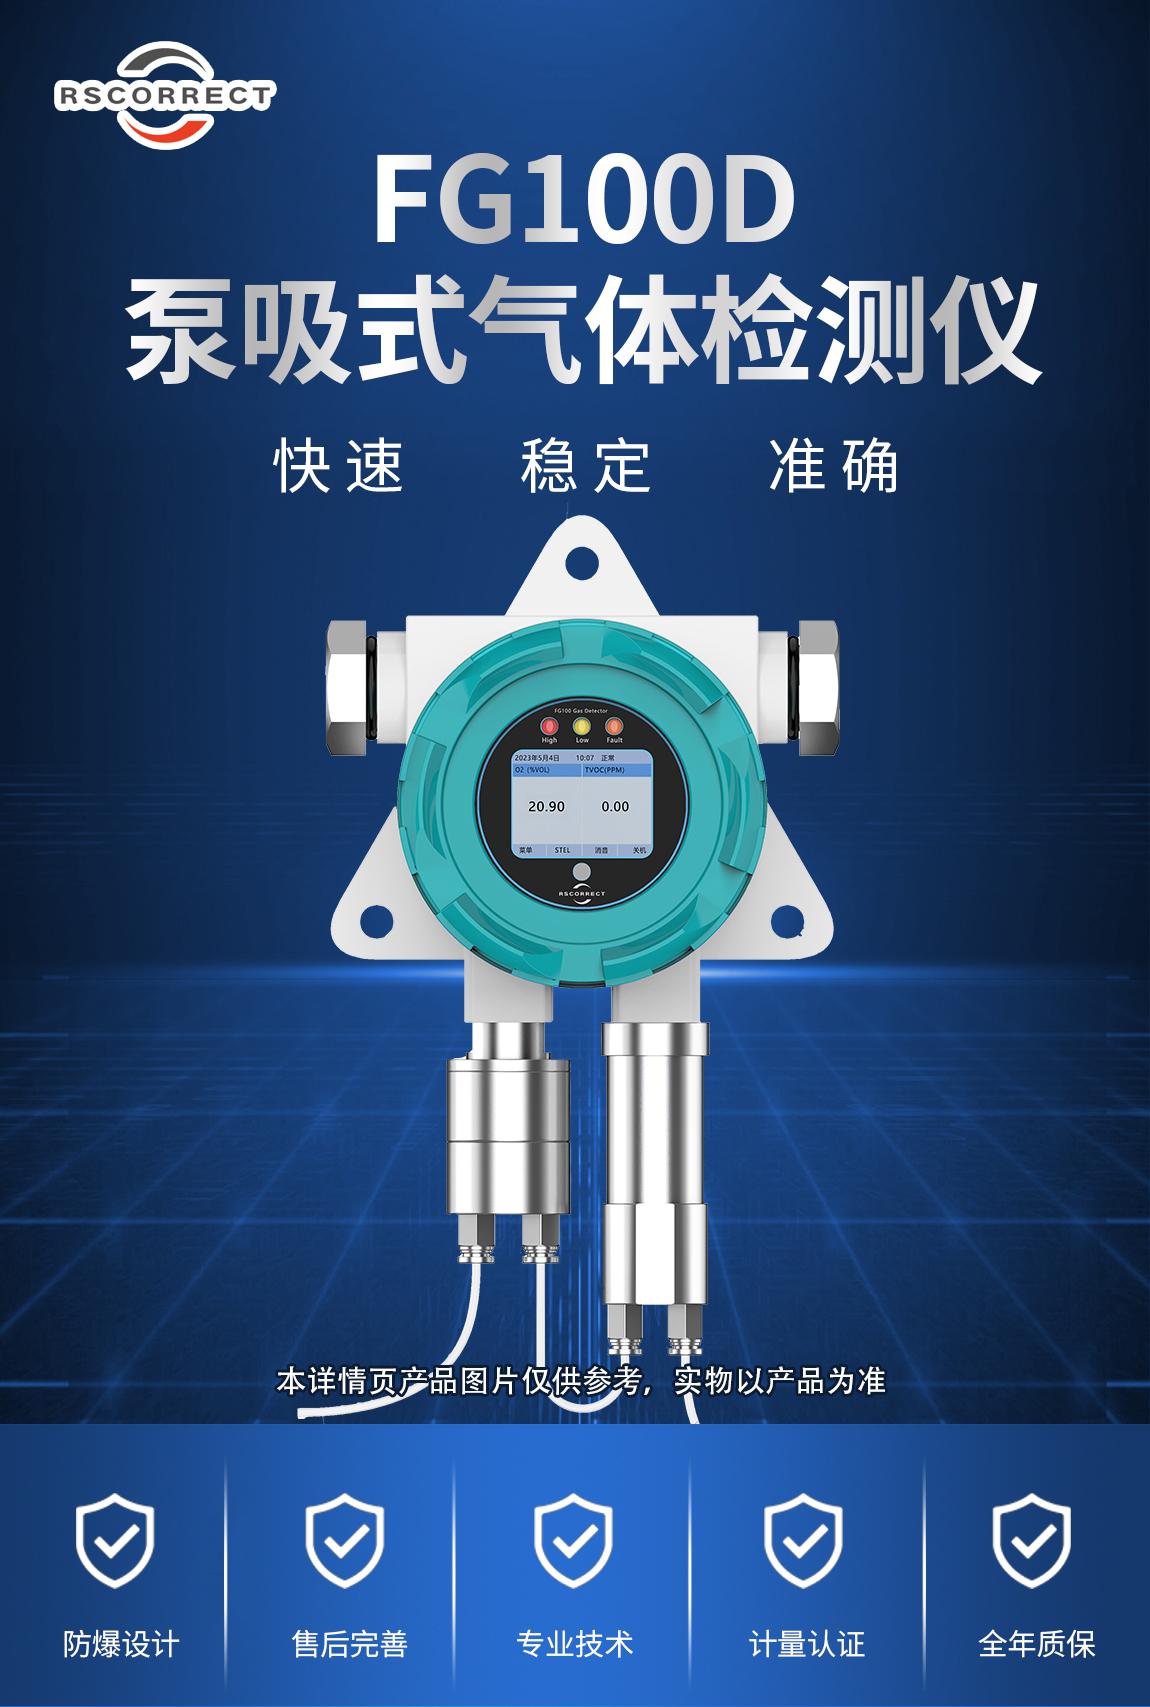 1-FG1000D泵吸式氧气检测仪-产品介绍.jpg